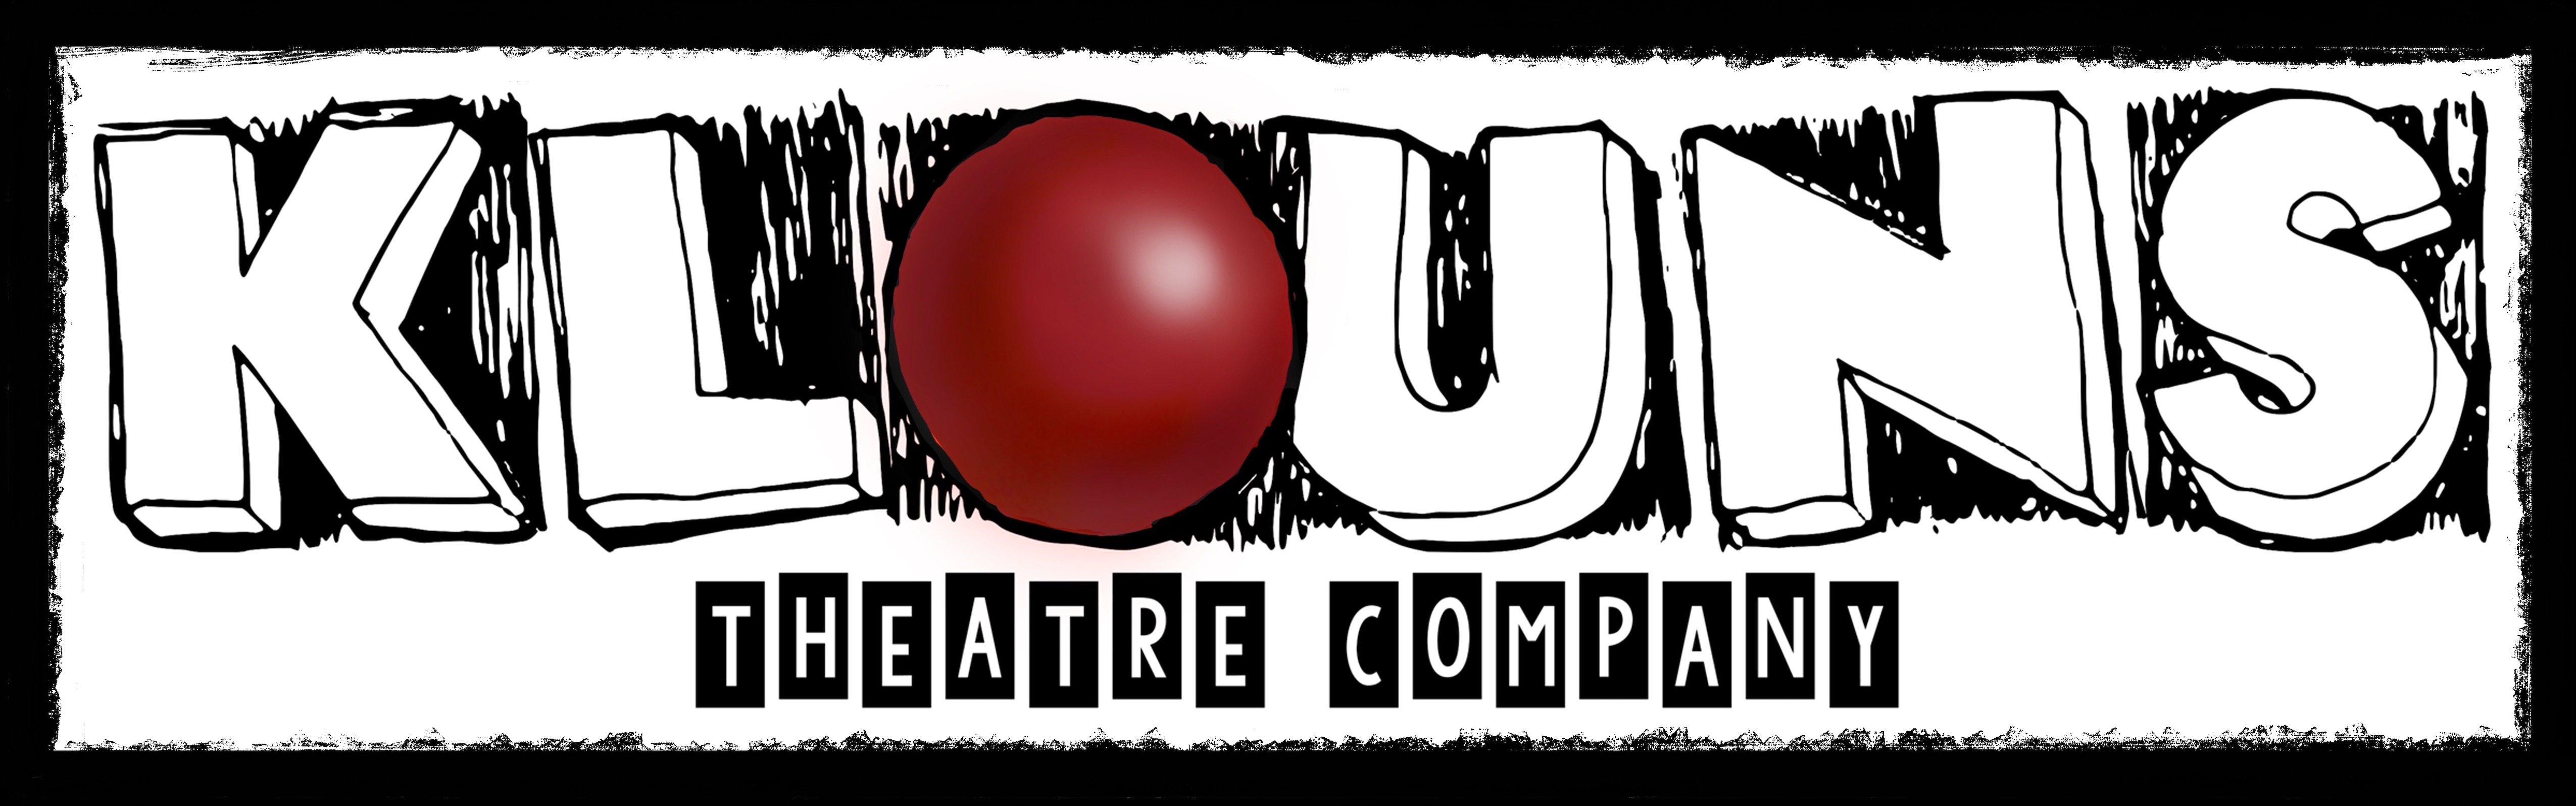 Klouns Theatre Company logo